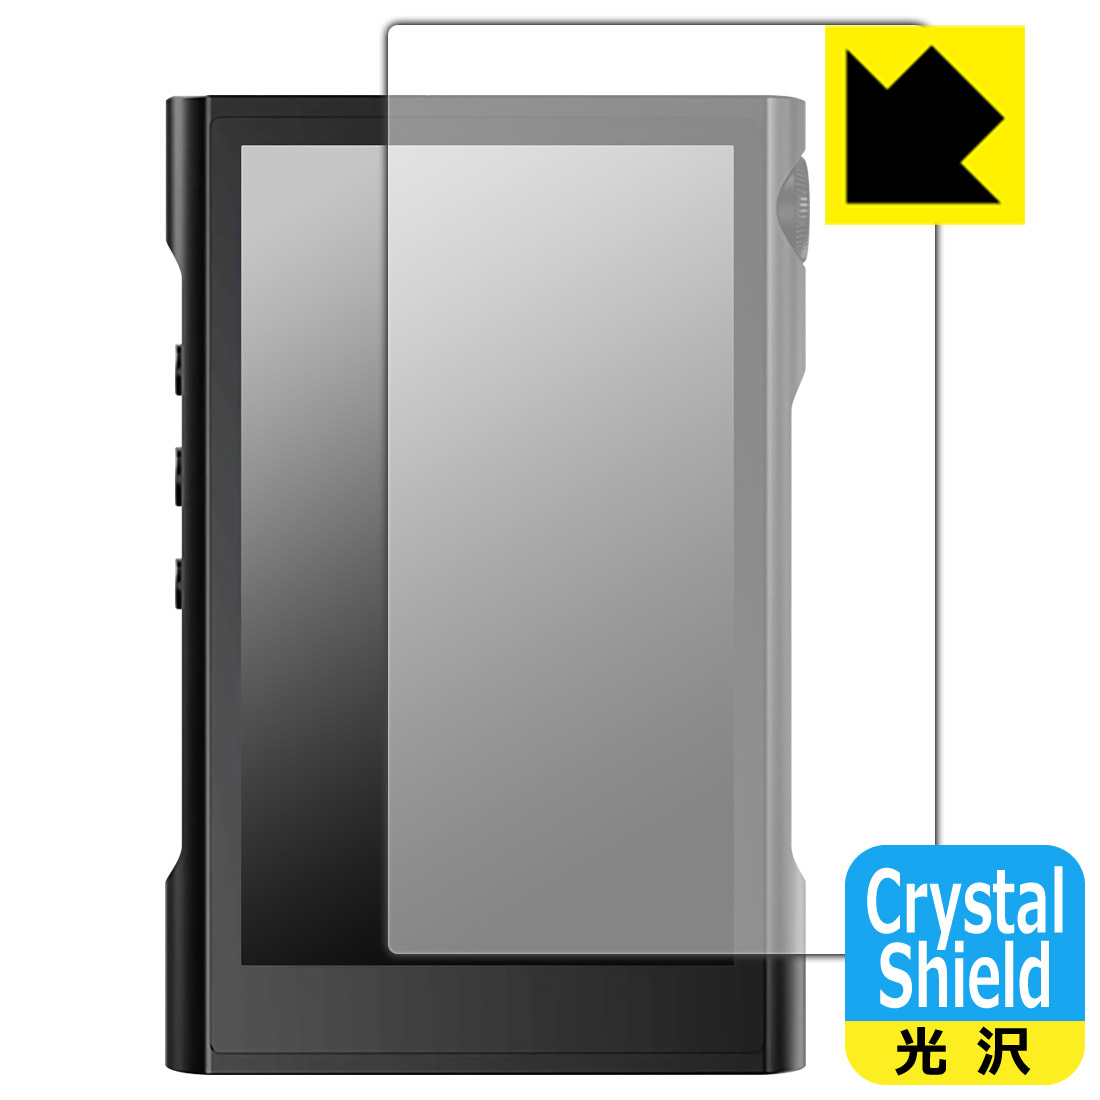 ●対応機種 : SHANLING M3X●製品内容 : 前面用3枚●「Crystal Shield」は高い透明度と光沢感で、保護フィルムを貼っていないかのようなクリア感のある『光沢タイプの保護フィルム』●安心の国産素材を使用。日本国内の自社工場で製造し出荷しています。【ポスト投函送料無料】商品は【ポスト投函発送 (追跡可能メール便)】で発送します。お急ぎ、配達日時を指定されたい方は以下のクーポンを同時購入ください。【お急ぎ便クーポン】　プラス110円(税込)で速達扱いでの発送。お届けはポストへの投函となります。【配達日時指定クーポン】　プラス550円(税込)で配達日時を指定し、宅配便で発送させていただきます。【お急ぎ便クーポン】はこちらをクリック【配達日時指定クーポン】はこちらをクリック 　 貼っていることを意識させないほどの高い透明度に、高級感あふれる光沢・クリアな仕上げとなります。 動画視聴や画像編集など、機器本来の発色を重視したい方におすすめです。 ハードコート加工がされており、キズや擦れに強くなっています。簡単にキズがつかず長くご利用いただけます。 表面はフッ素コーティングがされており、皮脂や汚れがつきにくく、また、落ちやすくなっています。 指滑りもなめらかで、快適な使用感です。 油性マジックのインクもはじきますので簡単に拭き取れます。 接着面は気泡の入りにくい特殊な自己吸着タイプです。素材に柔軟性があり、貼り付け作業も簡単にできます。また、はがすときにガラス製フィルムのように割れてしまうことはありません。 貼り直しが何度でもできるので、正しい位置へ貼り付けられるまでやり直すことができます。 抗菌加工によりフィルム表面の菌の繁殖を抑えることができます。清潔な画面を保ちたい方におすすめです。 ※抗菌率99.9％ / JIS Z2801 抗菌性試験方法による評価 最高級グレードの国産素材を日本国内の弊社工場で加工している完全な Made in Japan です。安心の品質をお届けします。 使用上の注意 ●本製品は機器の画面をキズなどから保護するフィルムです。他の目的にはご使用にならないでください。 ●本製品は液晶保護および機器本体を完全に保護することを保証するものではありません。機器の破損、損傷、故障、その他損害につきましては一切の責任を負いかねます。 ●製品の性質上、画面操作の反応が変化したり、表示等が変化して見える場合がございます。 ●貼り付け作業時の失敗(位置ズレ、汚れ、ゆがみ、折れ、気泡など)および取り外し作業時の破損、損傷などについては、一切の責任を負いかねます。 ●水に濡れた状態でのご使用は吸着力の低下などにより、保護フィルムがはがれてしまう場合がございます。防水対応の機器でご使用の場合はご注意ください。 ●アルコール類やその他薬剤を本製品に付着させないでください。表面のコーティングや吸着面が変質するおそれがあります。 ●品質向上のため、仕様などを予告なく変更する場合がございますので、予めご了承ください。